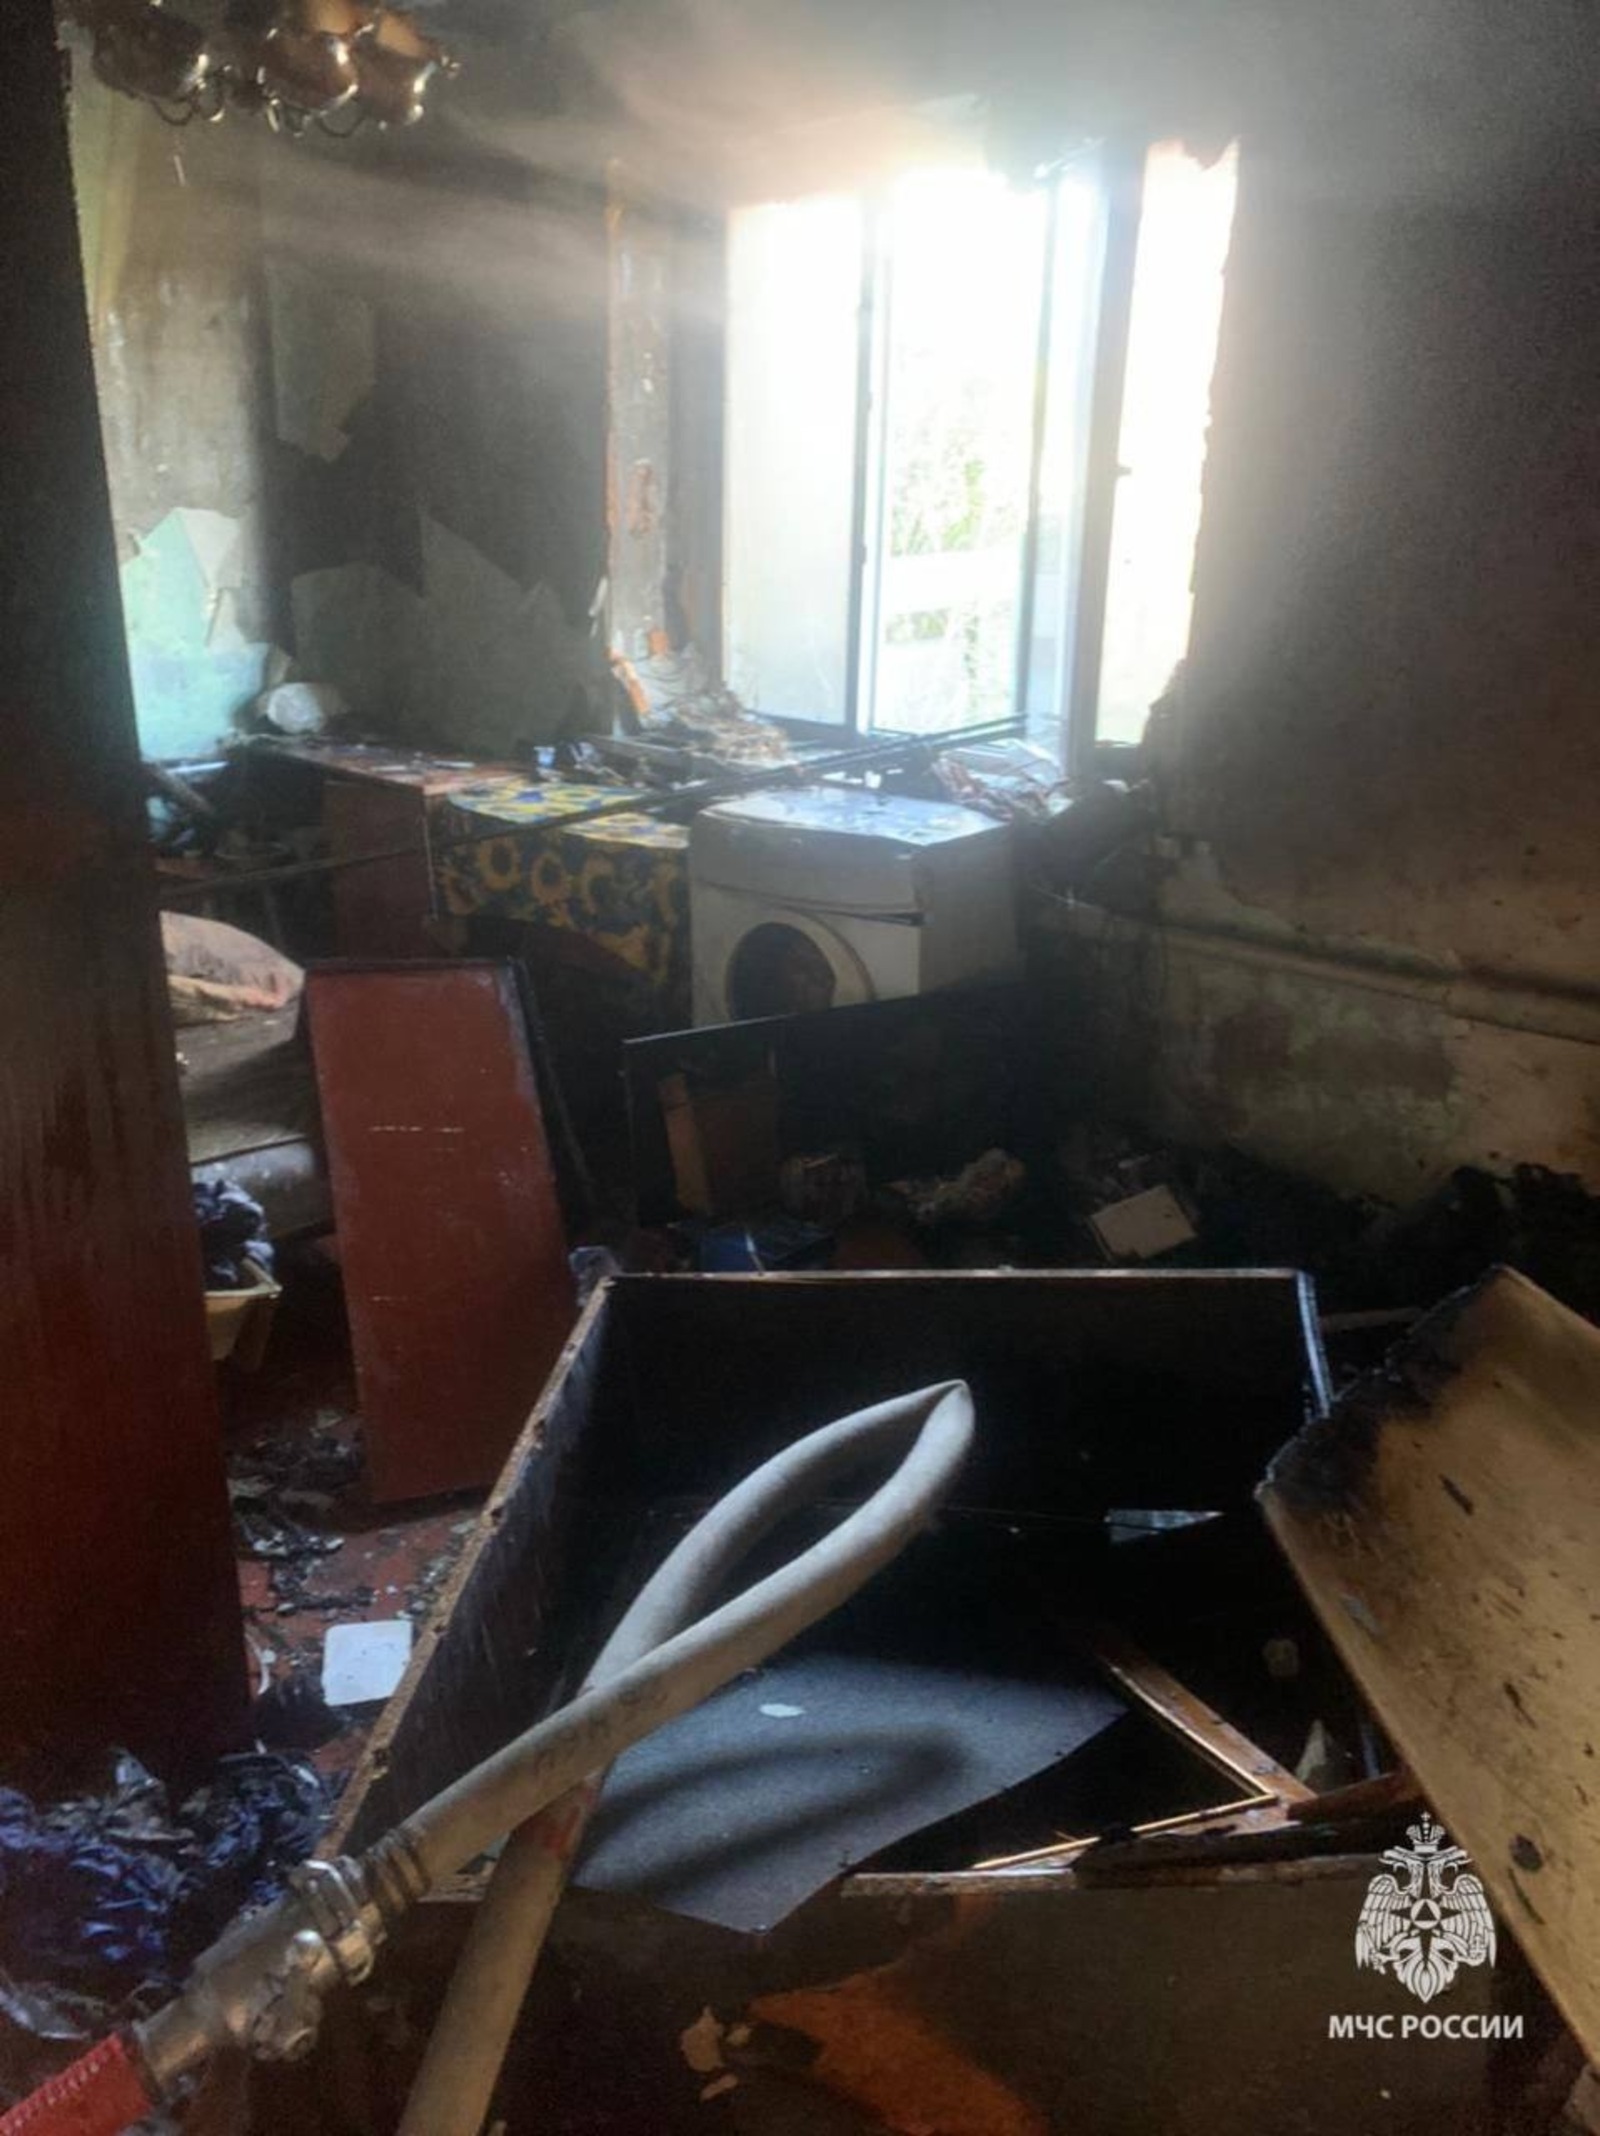 Очевидцы вынесли из горящего дома мужчину, но врачи констатировали его смерть